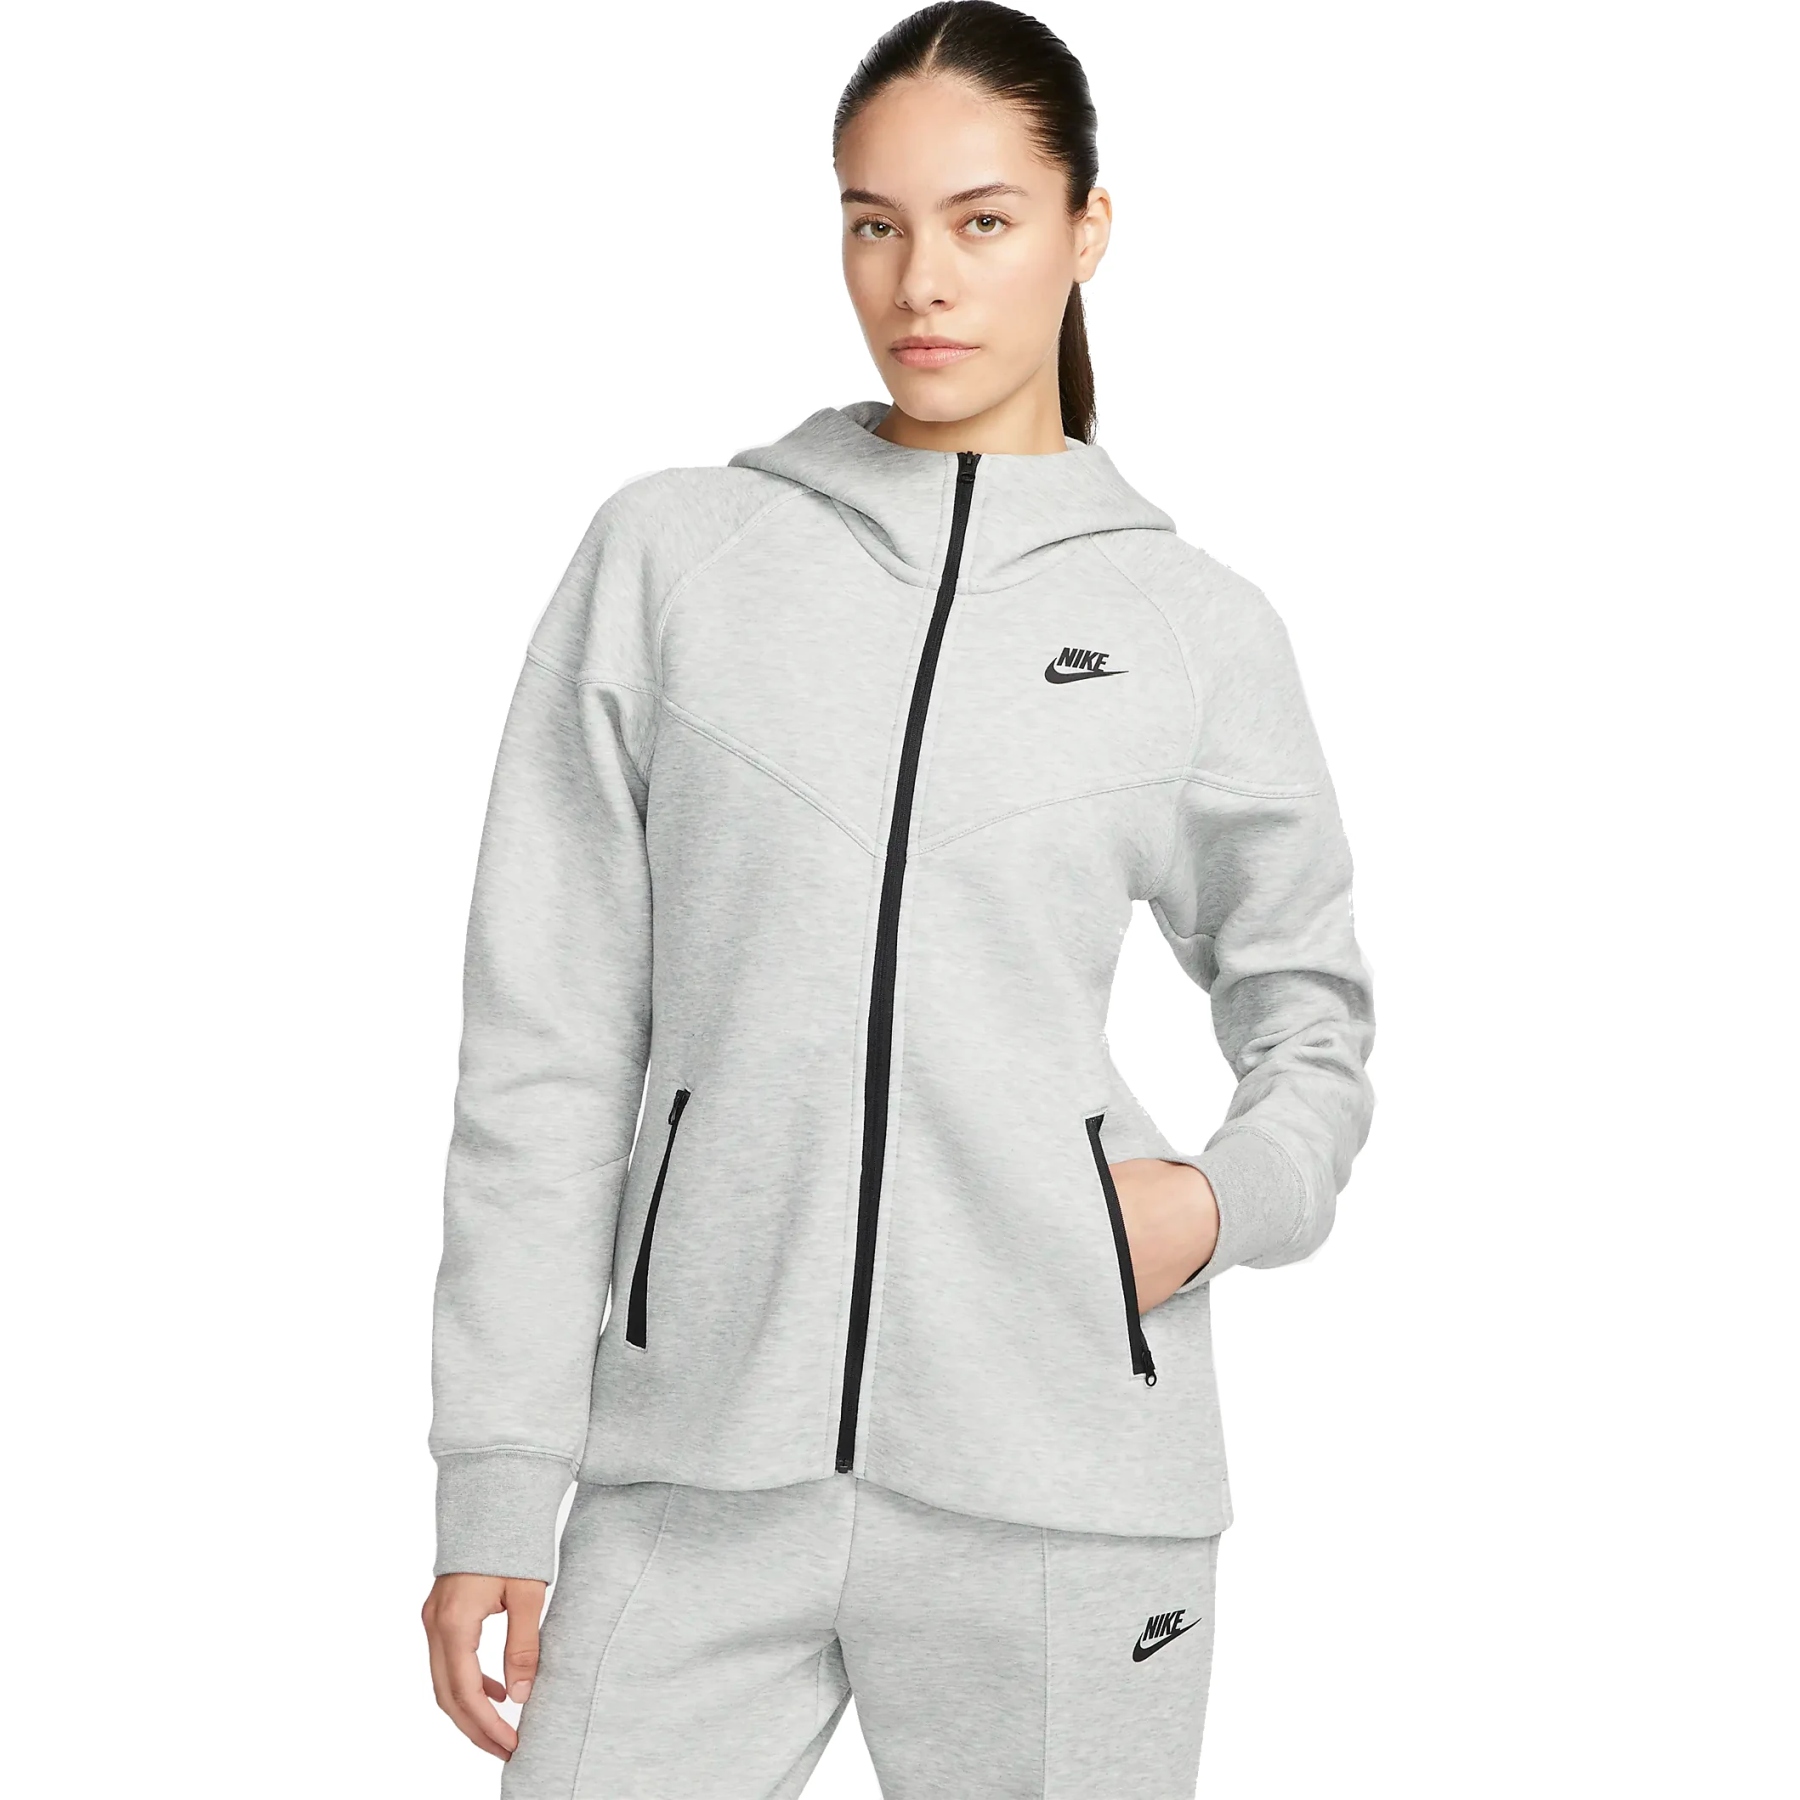 Immagine di Nike Giacca Donna - Sportswear Tech Fleece Windrunner - dark grey heather/black FB8338-063